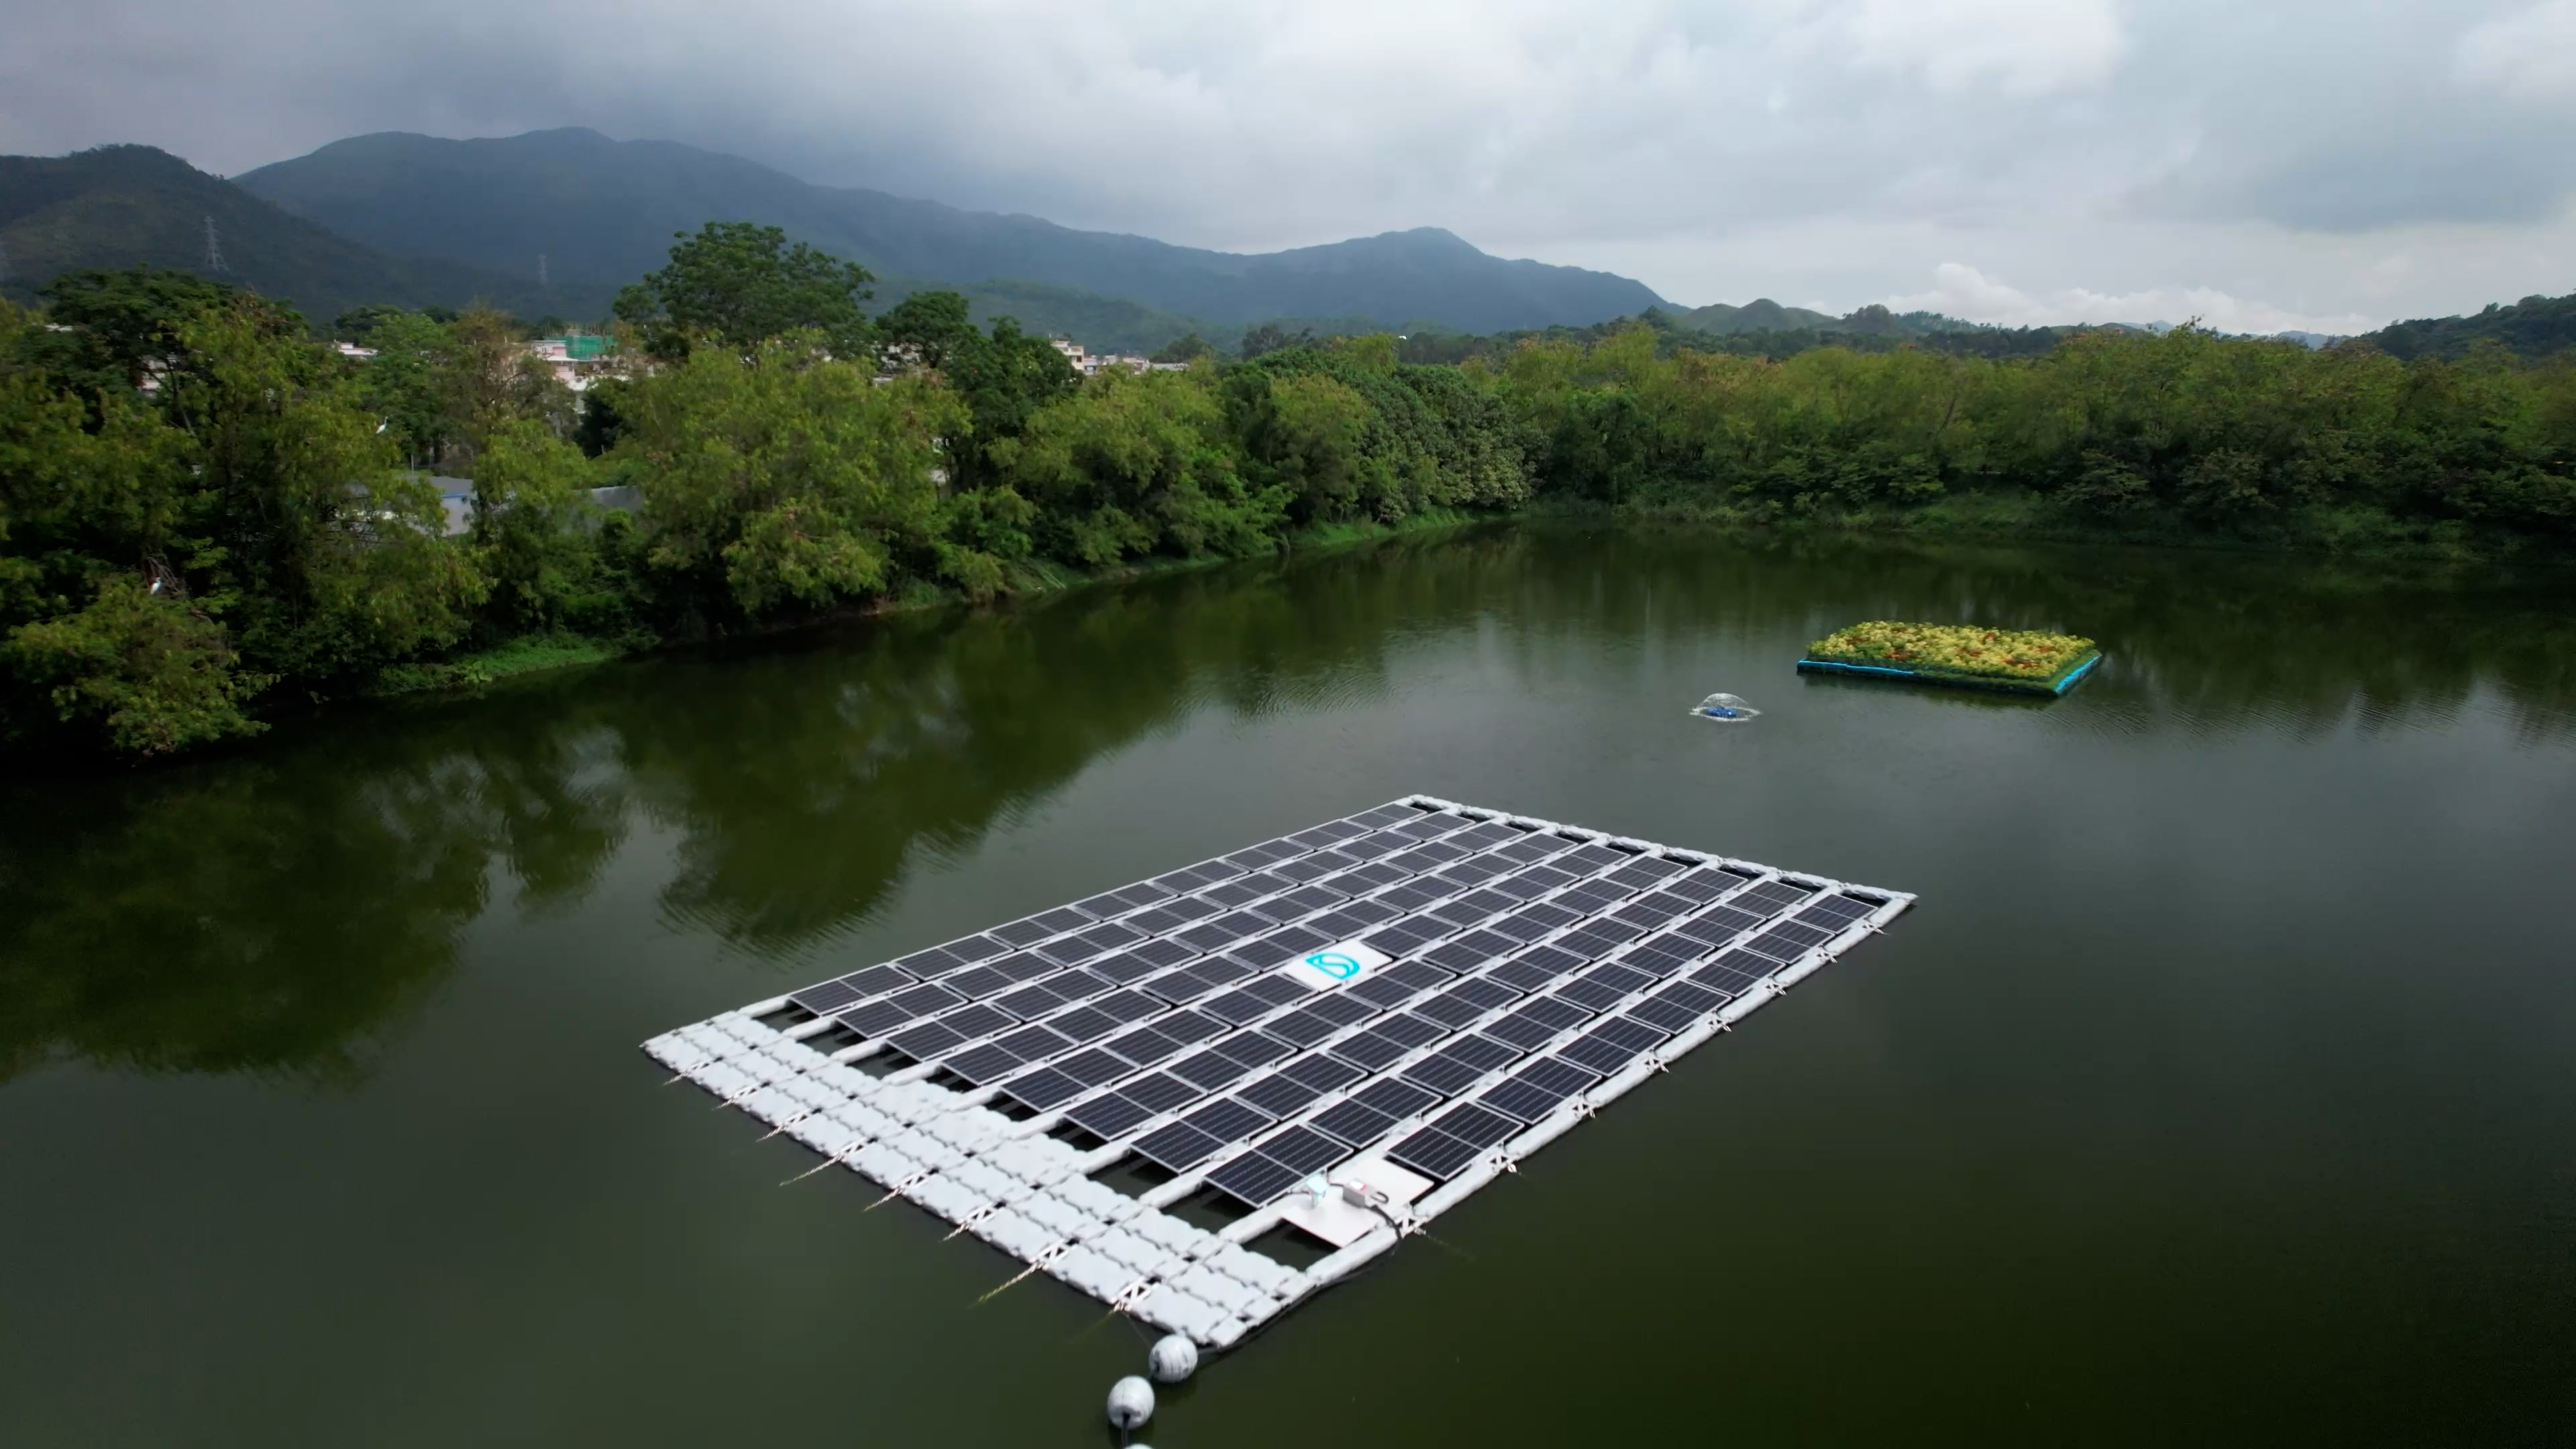 设于新田蓄洪池的浮式太阳能发电系统及生态浮岛